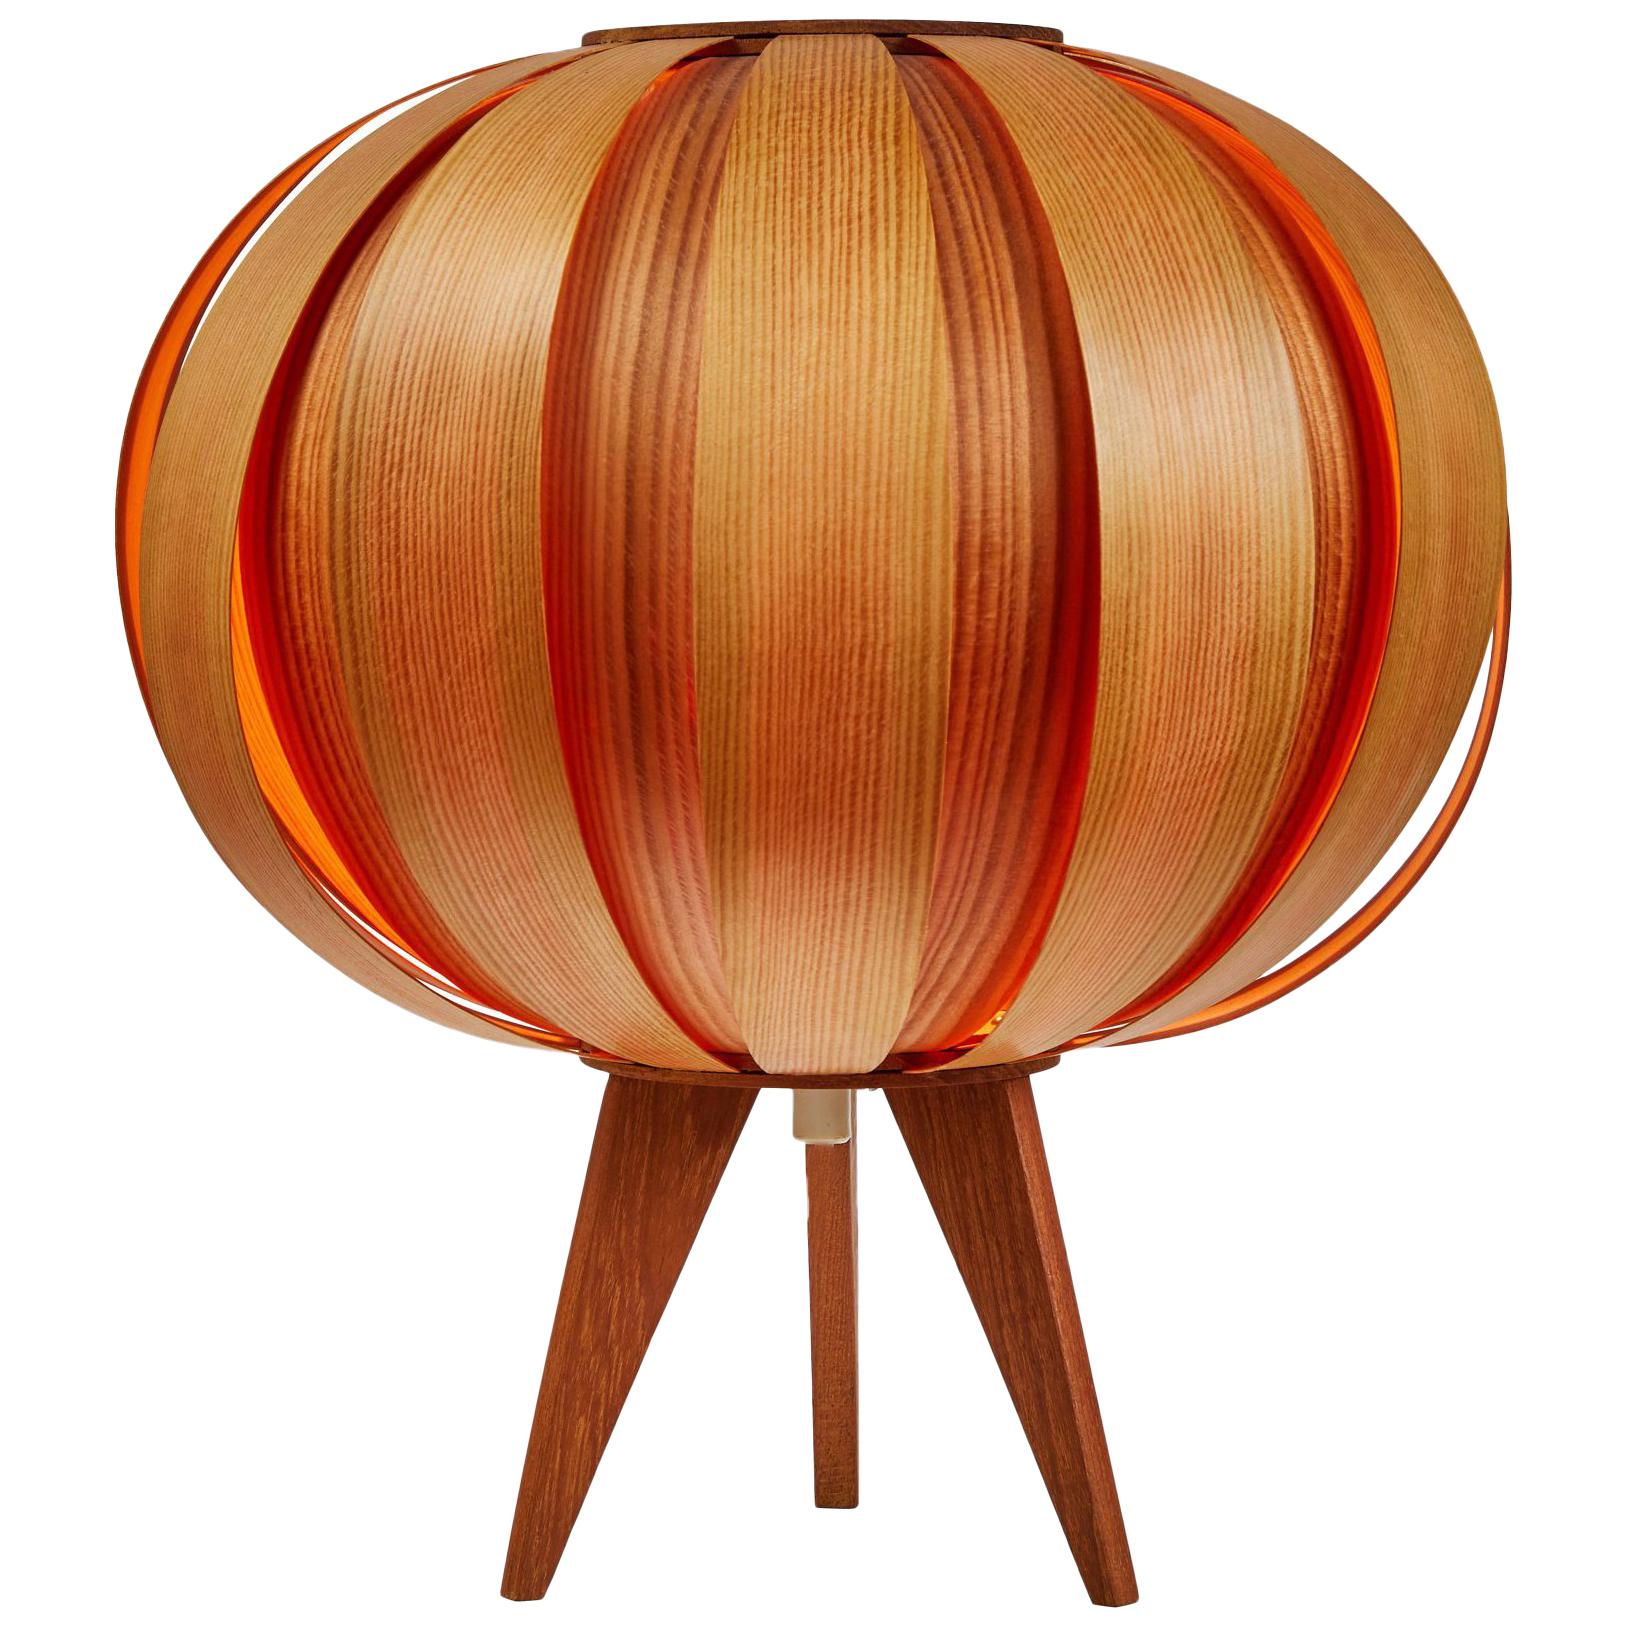 1960s Hans-Agne Jakobsson Wood Table Lamp for AB Ellysett